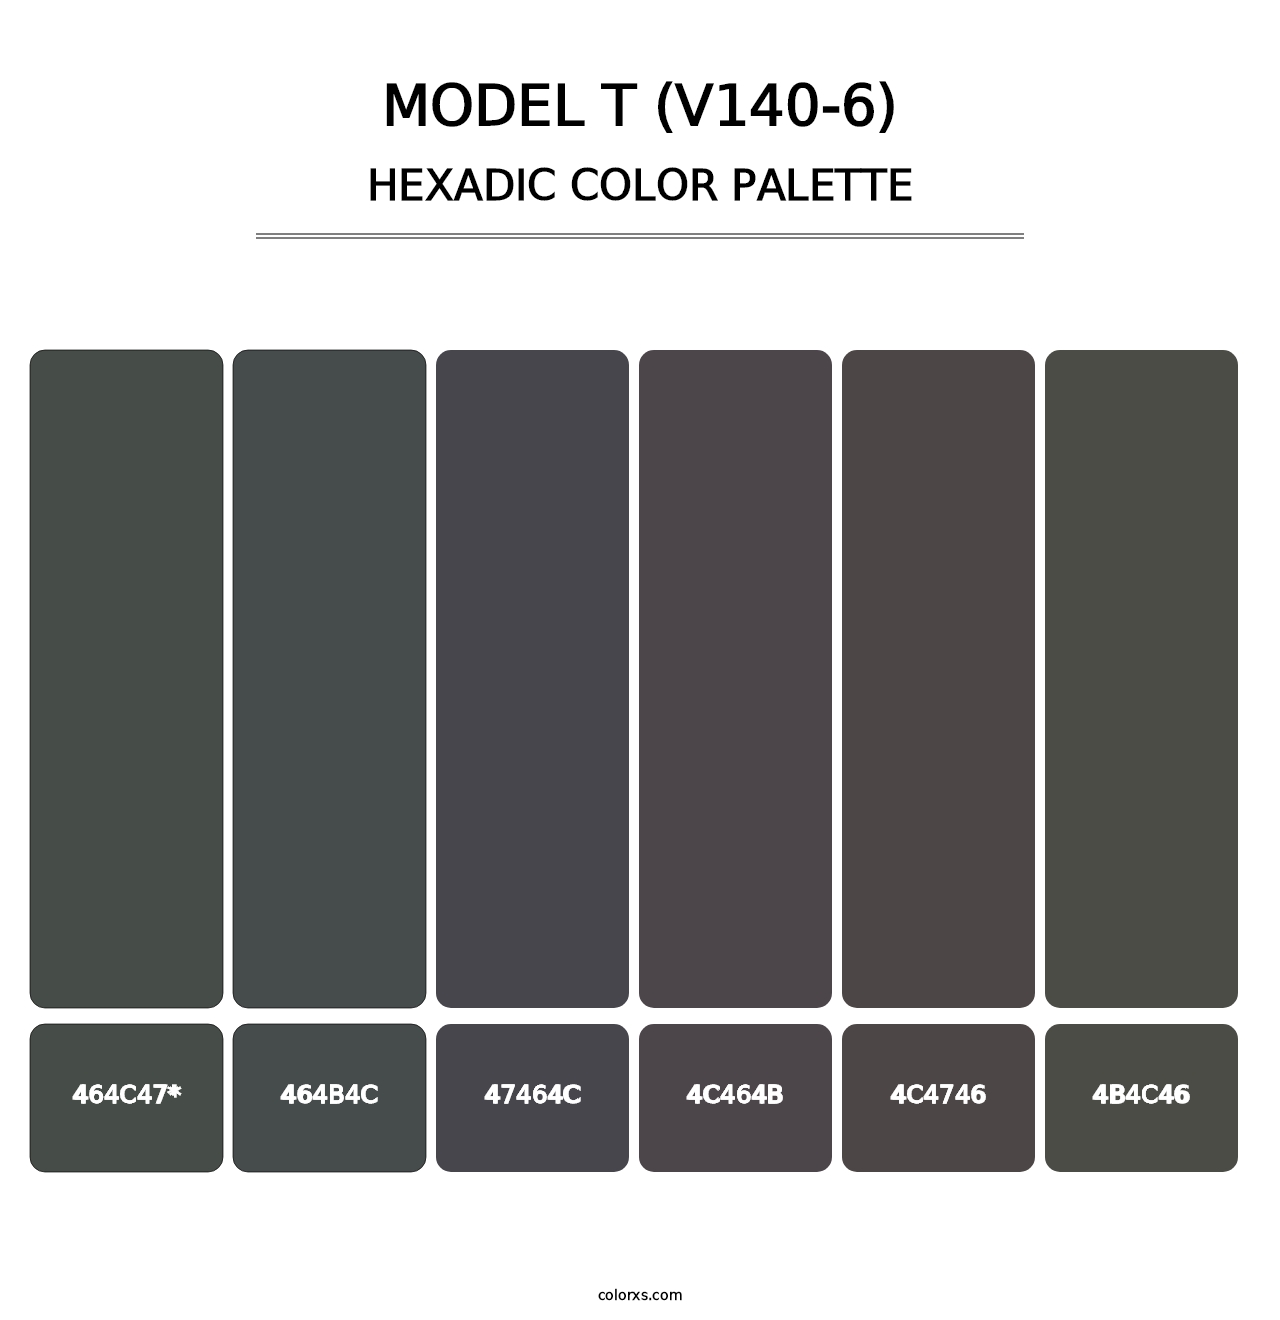 Model T (V140-6) - Hexadic Color Palette